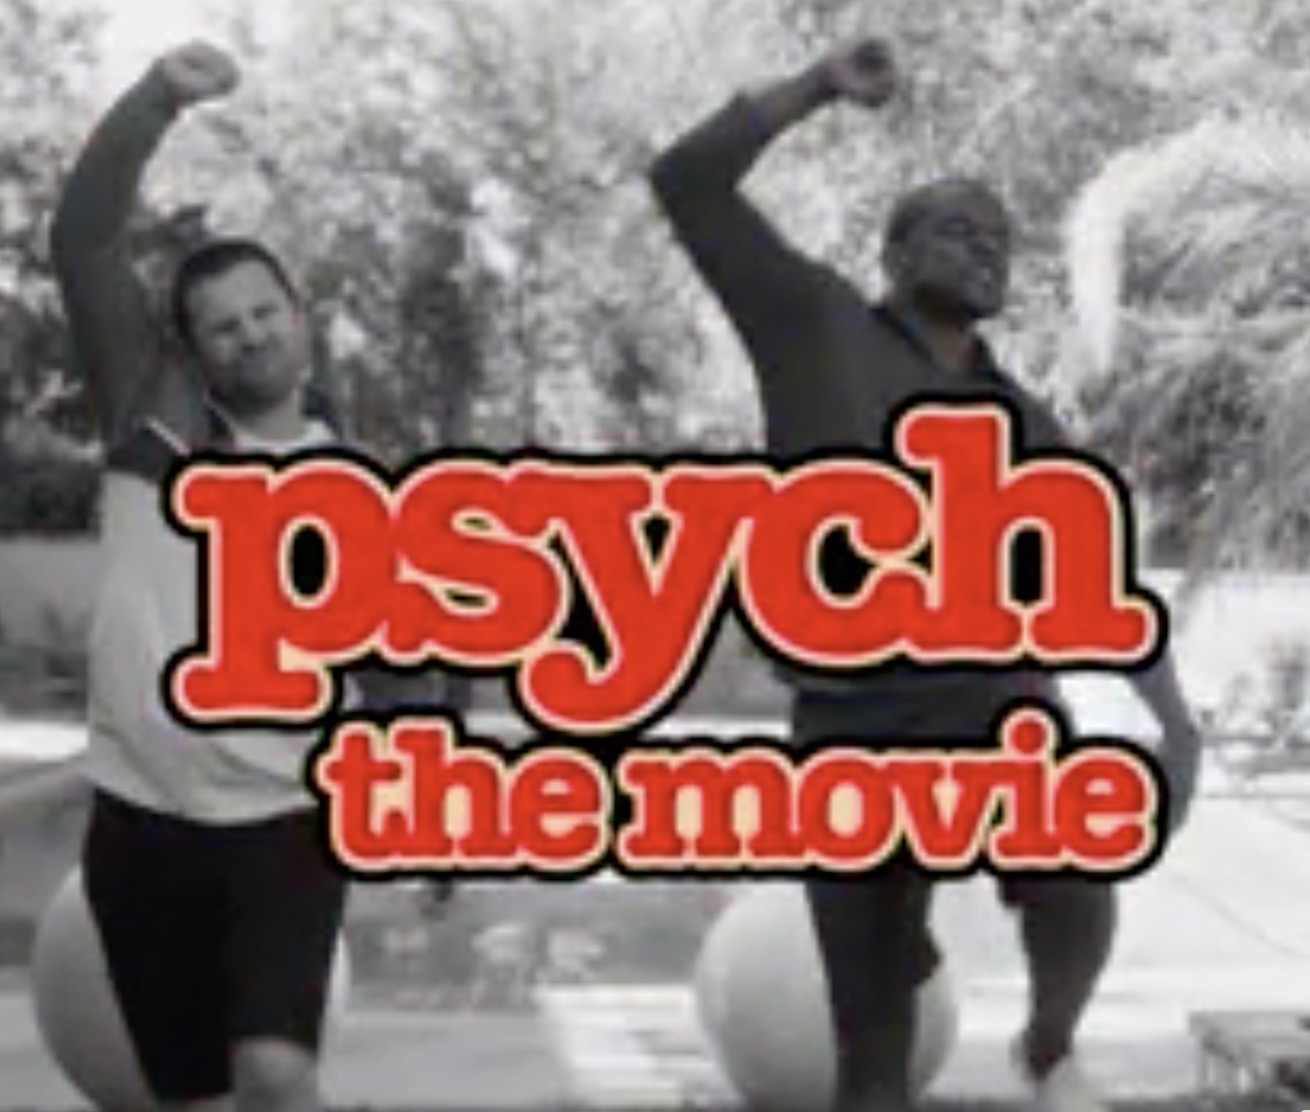 Psych movie 2017 Teaser